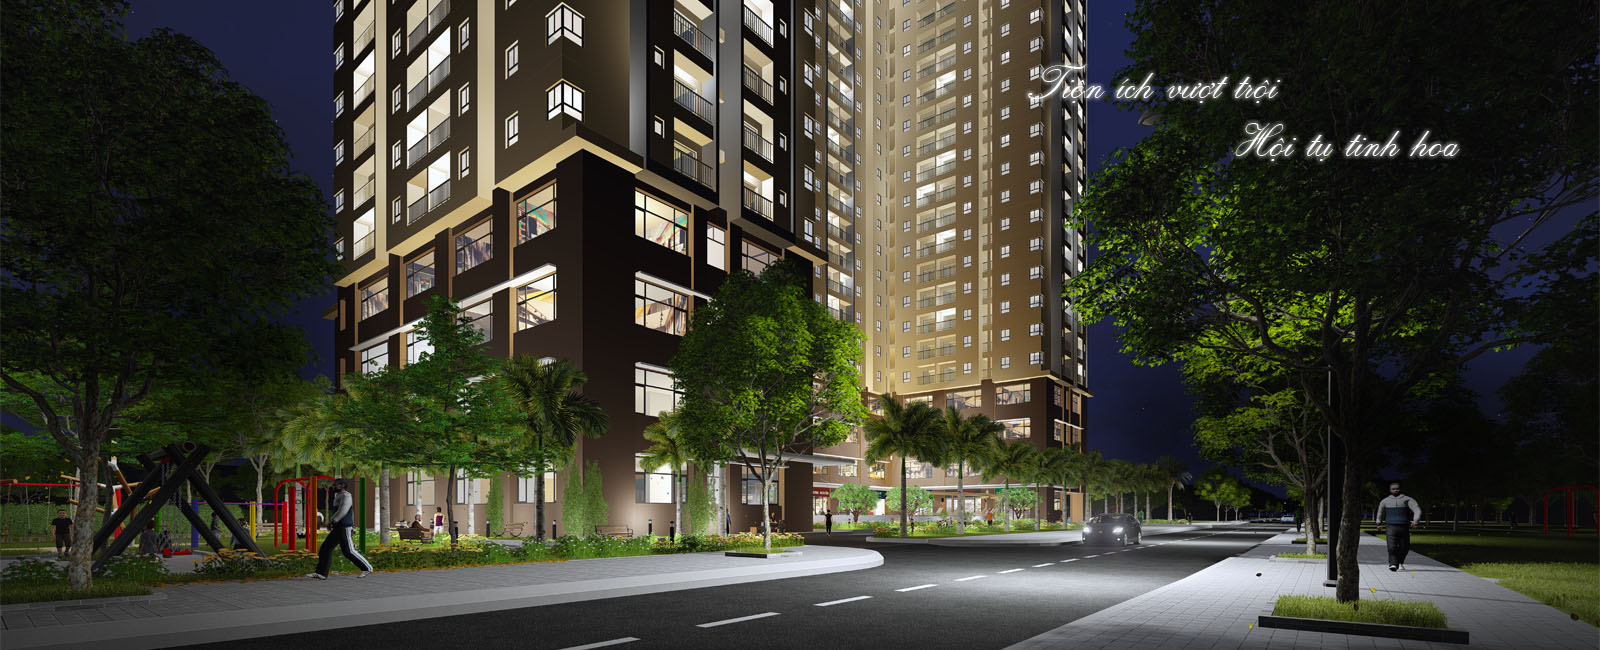 Dự án căn hộ chung cư Kingsway Tower, Bình Hưng Hòa, quận Bình Tân